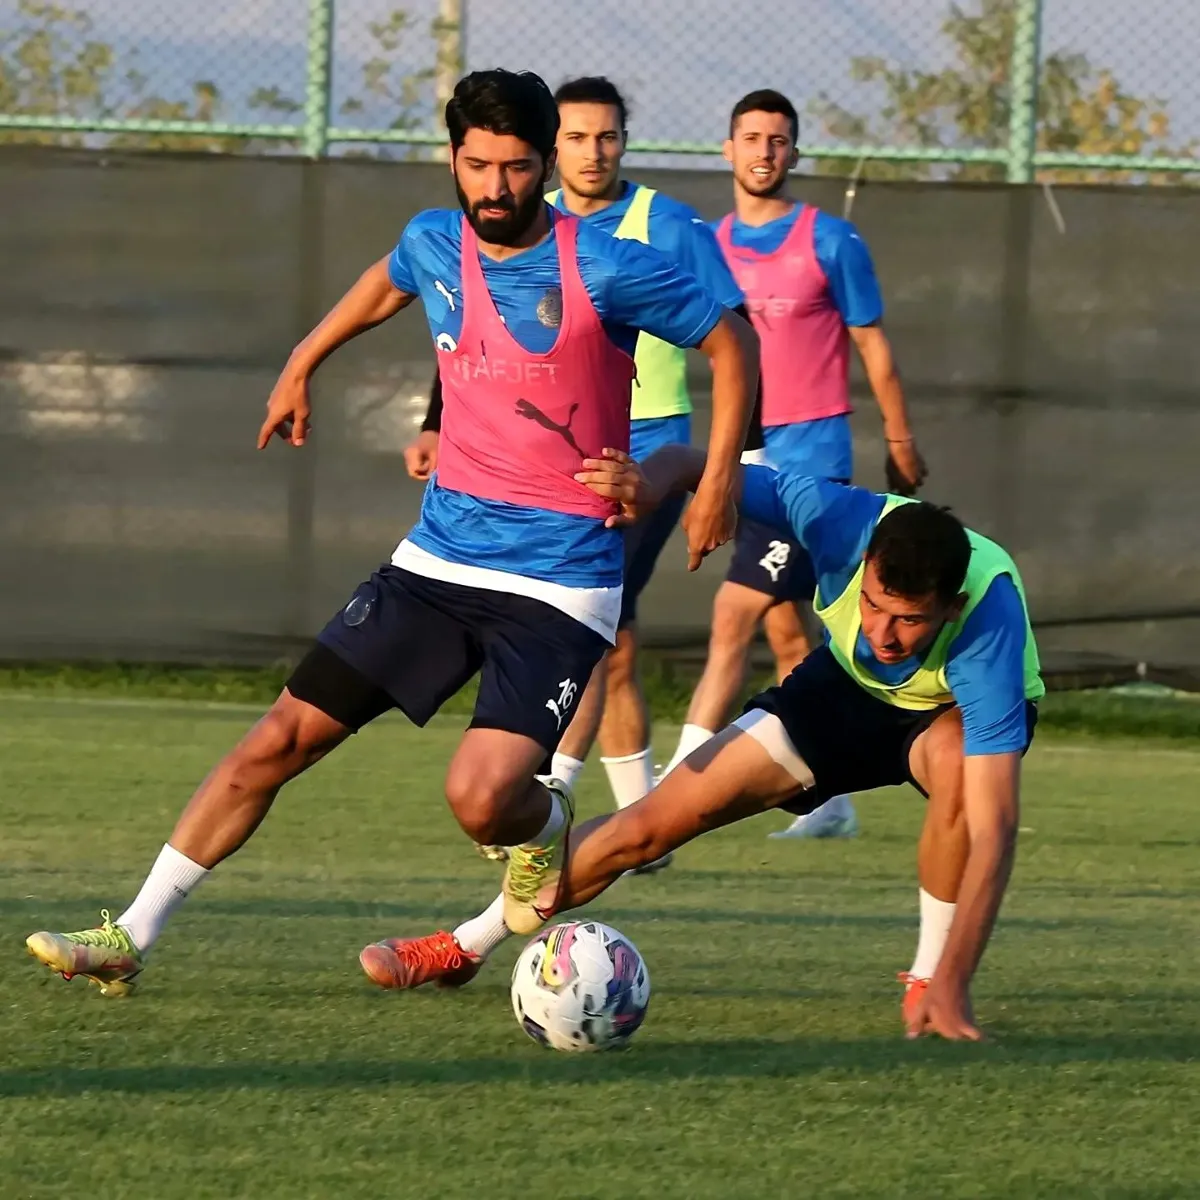 Afyon haber… Afyonspor yeni sezon hazırlıklarının ilk etabını tamamladı